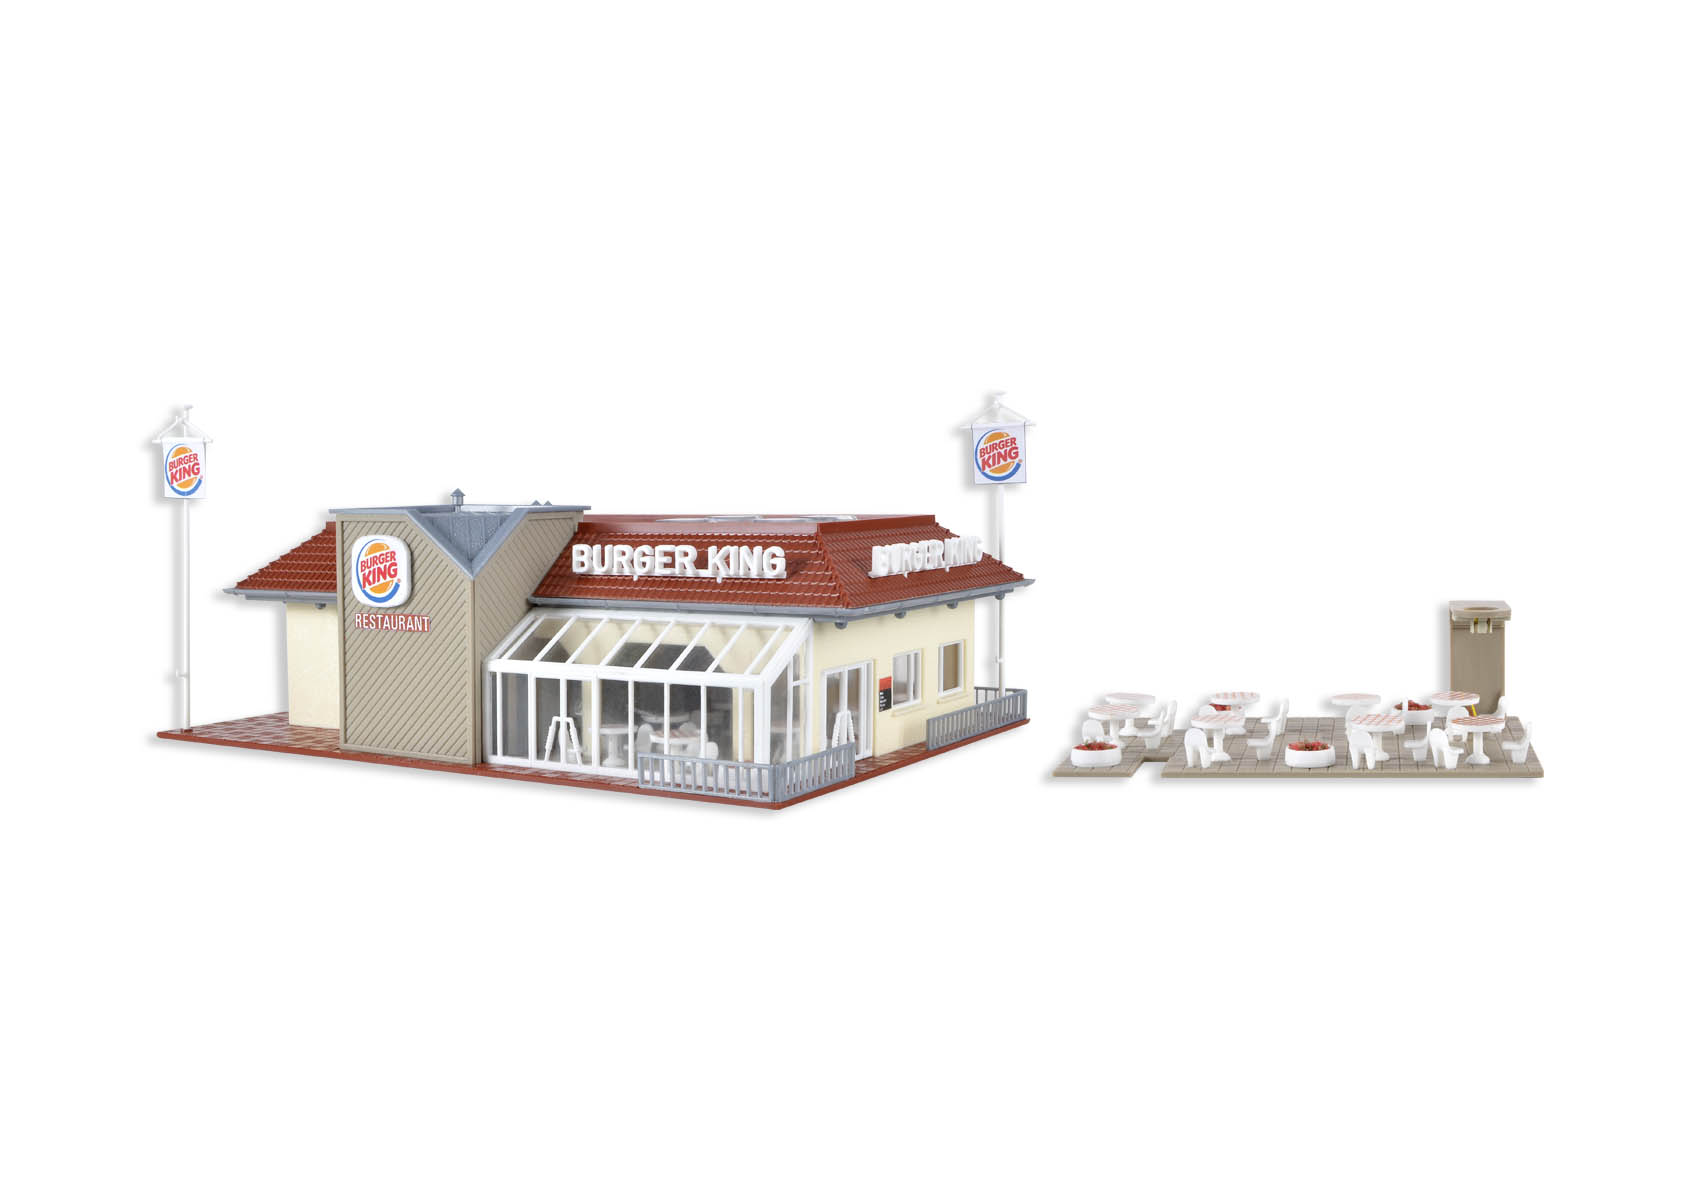 Vollmer 43632 H0 Burger King fastfood restaurant